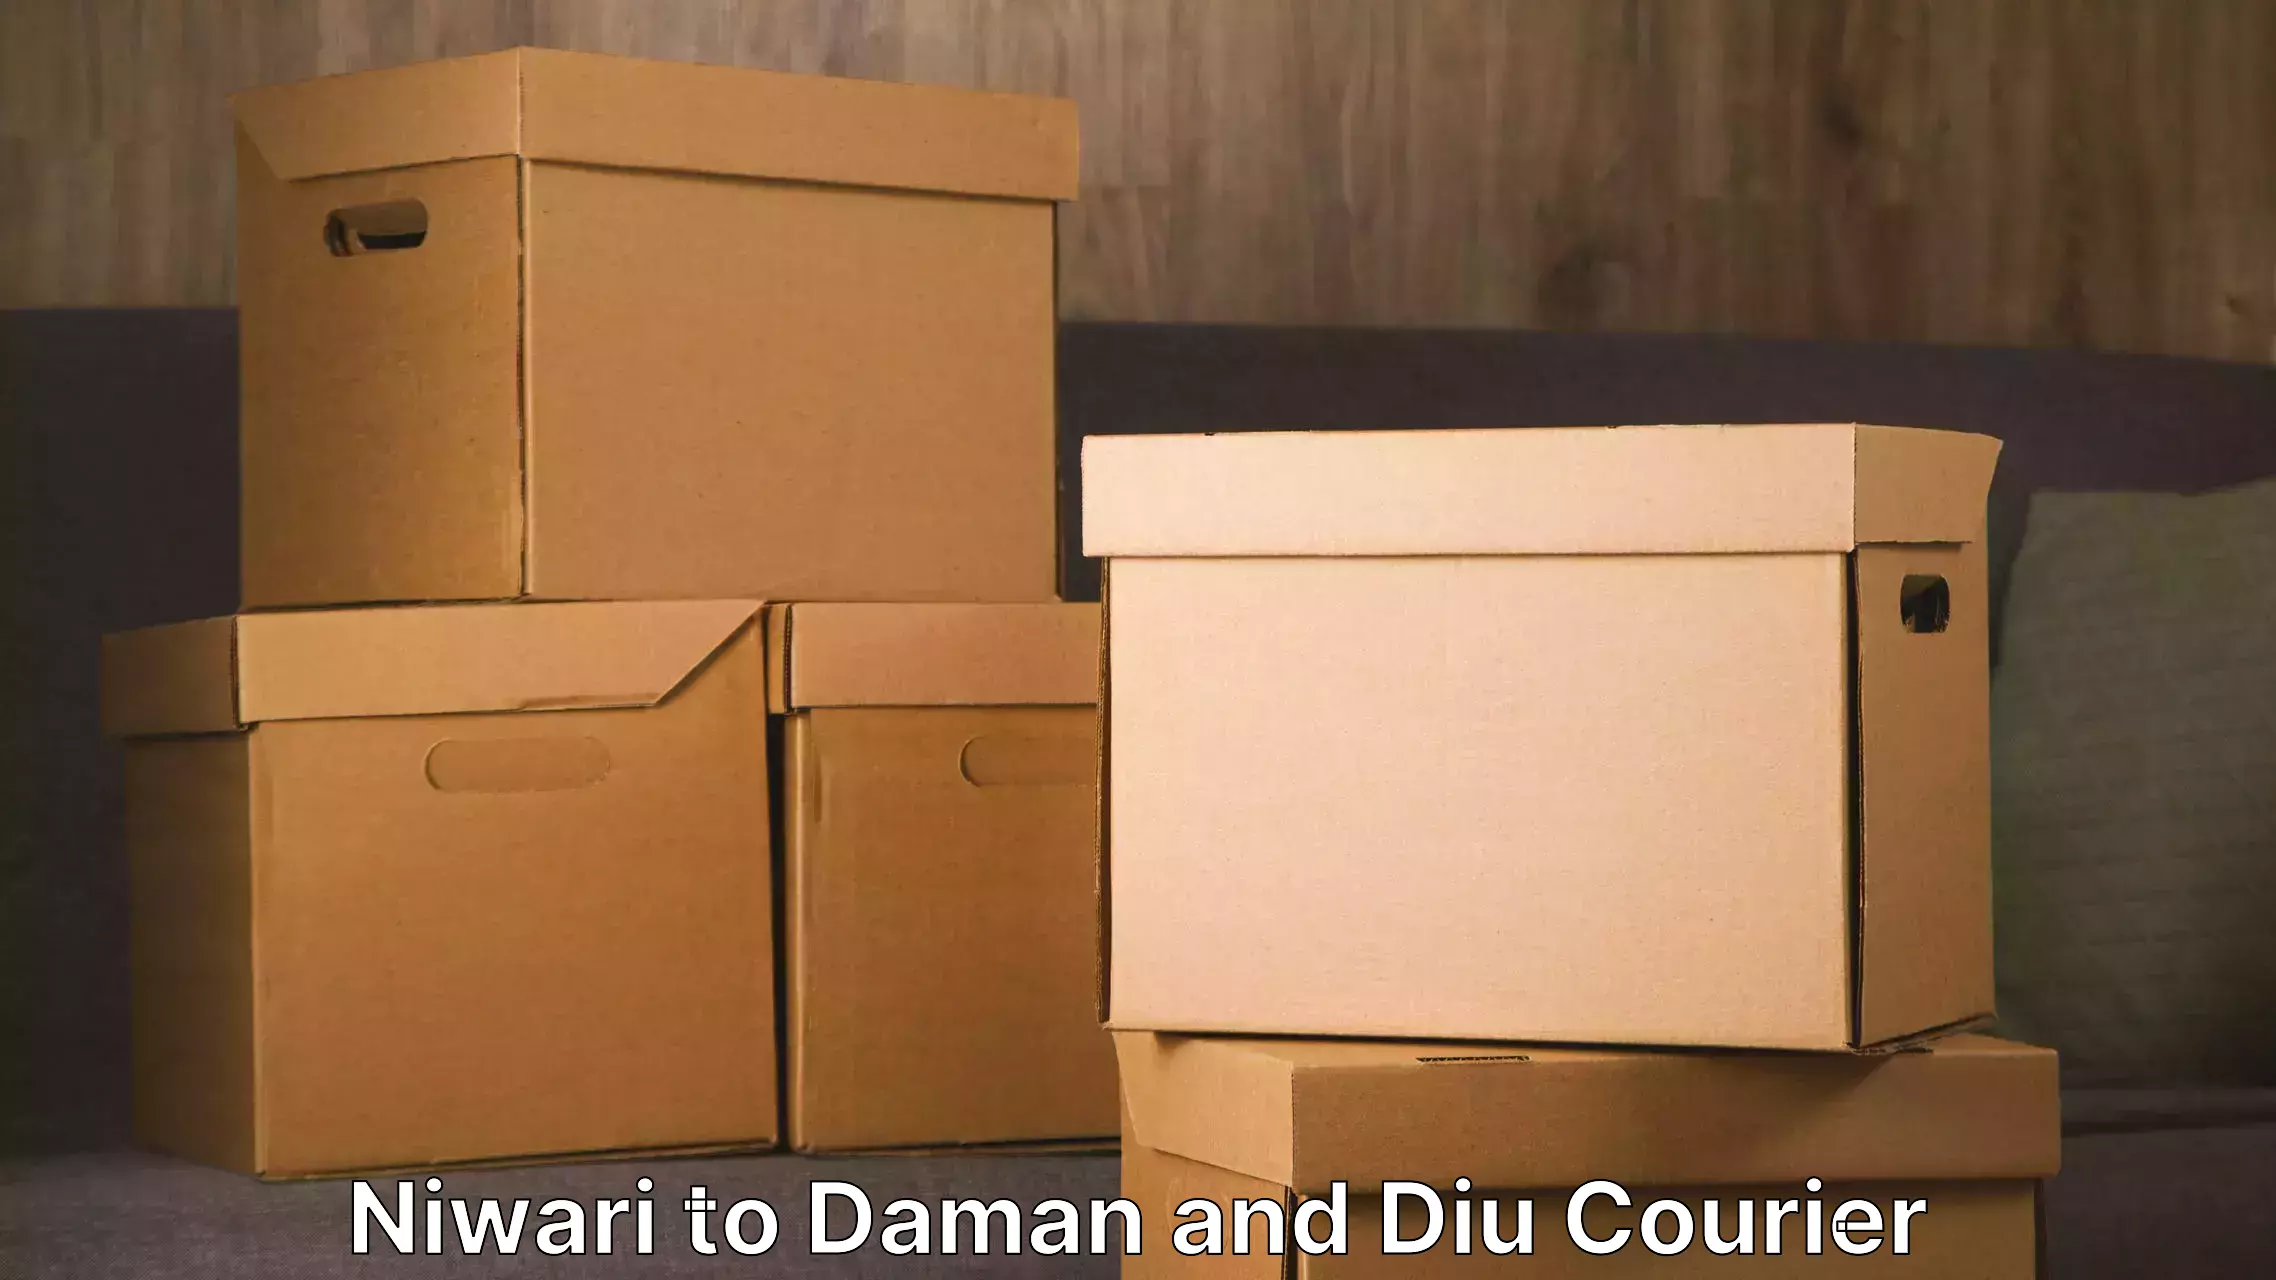 Moving and packing experts Niwari to Daman